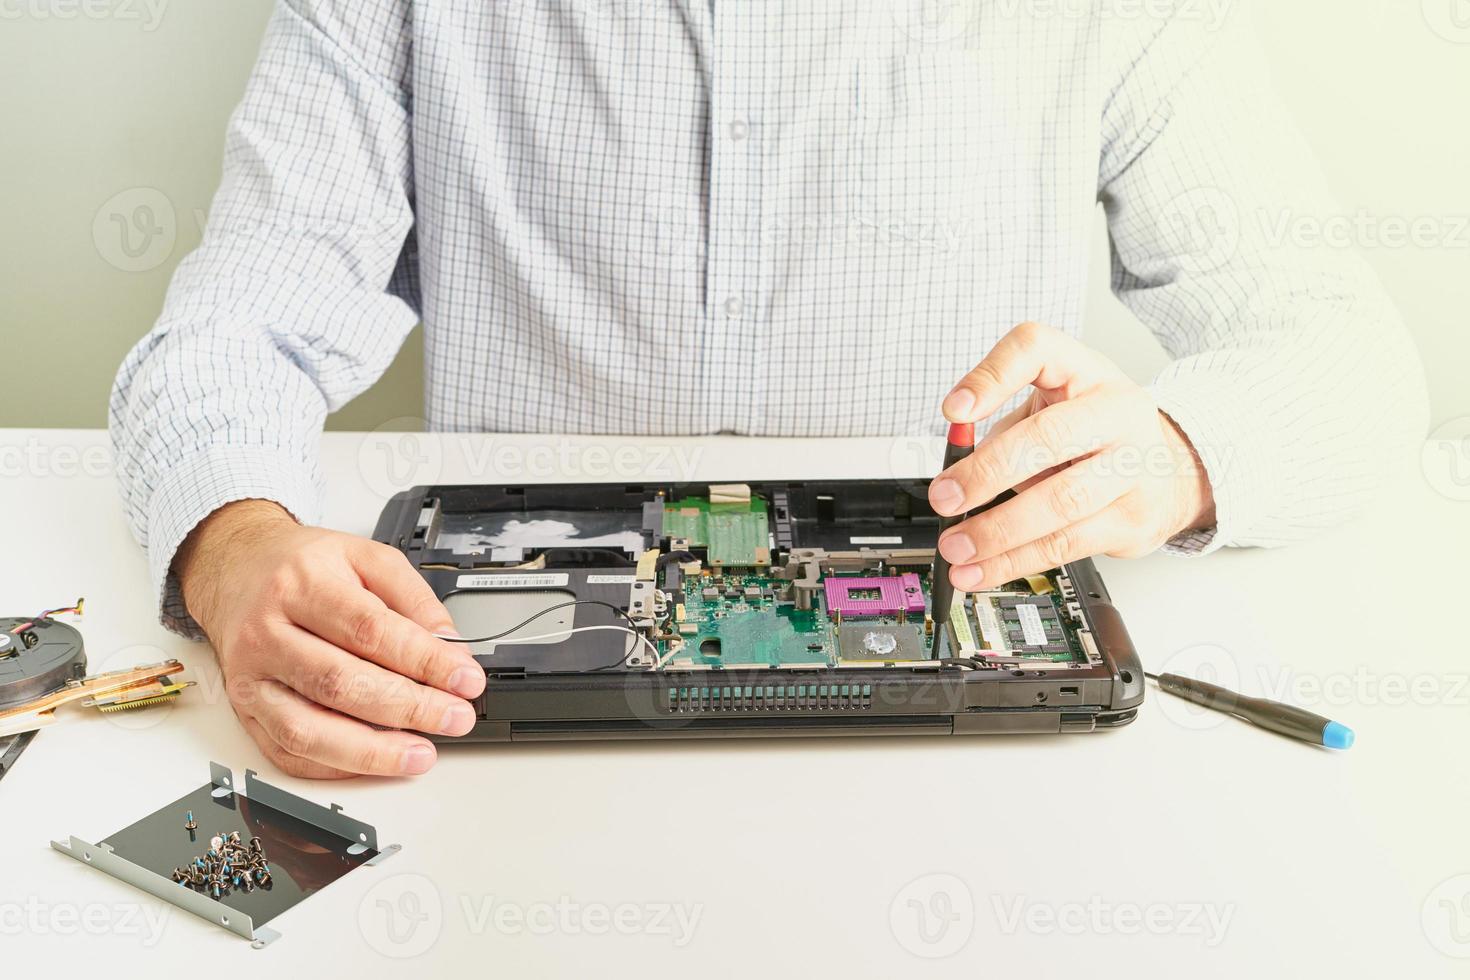 man repareert computer. een servicemonteur in shirt repareert laptop, aan een wit bureau tegen een witte muur. foto